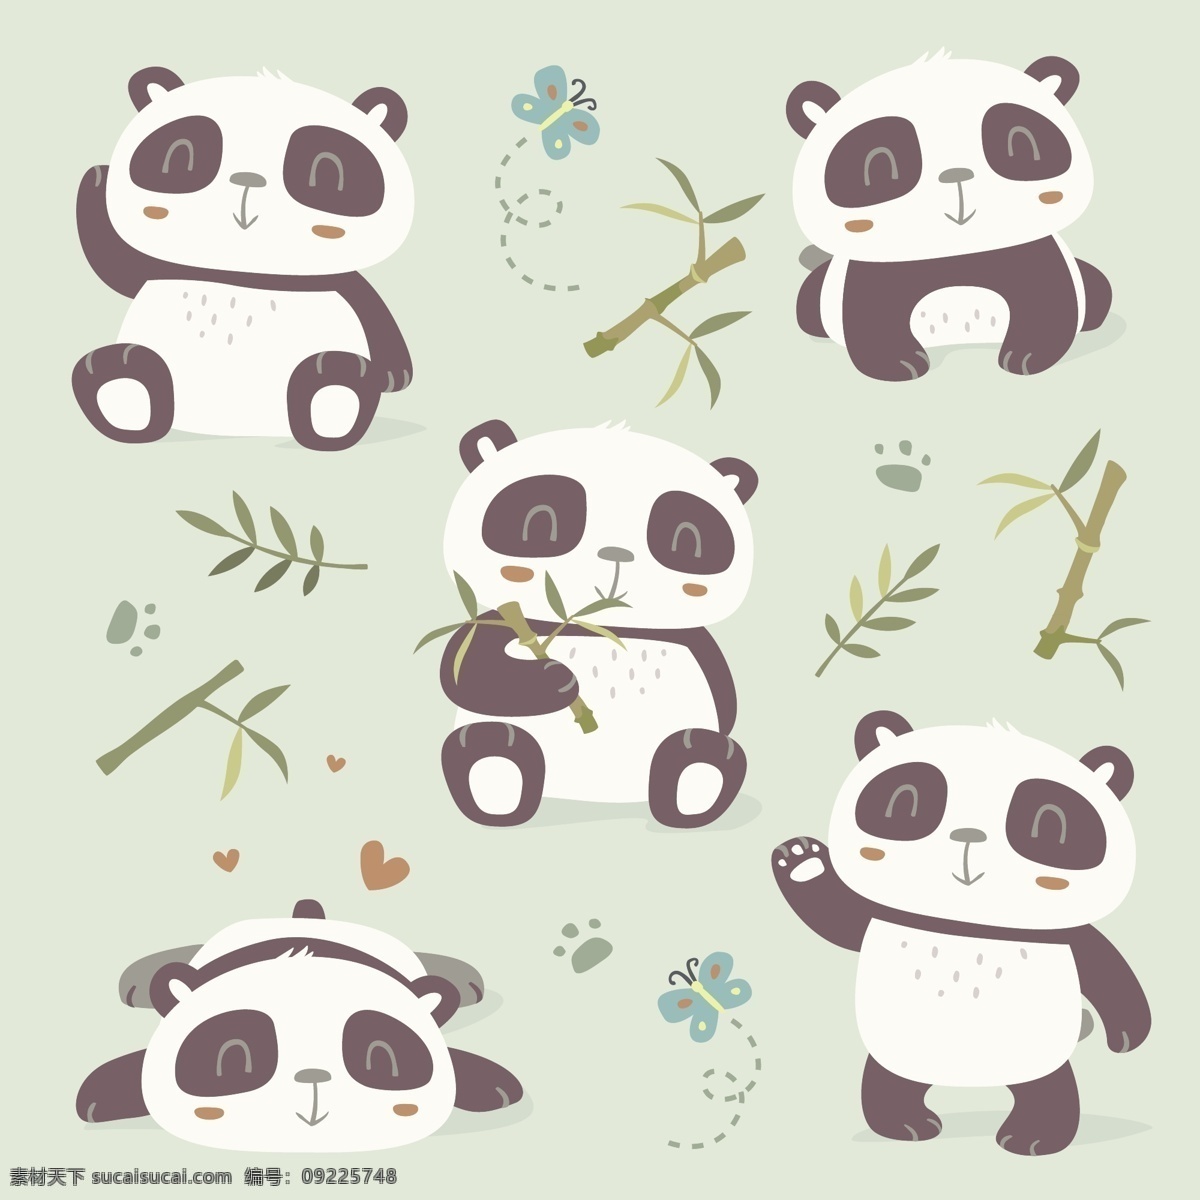 吃 竹子 可爱 卡通 熊猫 填充 背景 矢量 小熊猫 绿色背景 涂鸦 线条 水彩 小清新 无缝填充 包装背景 矢量素材 平面 广告